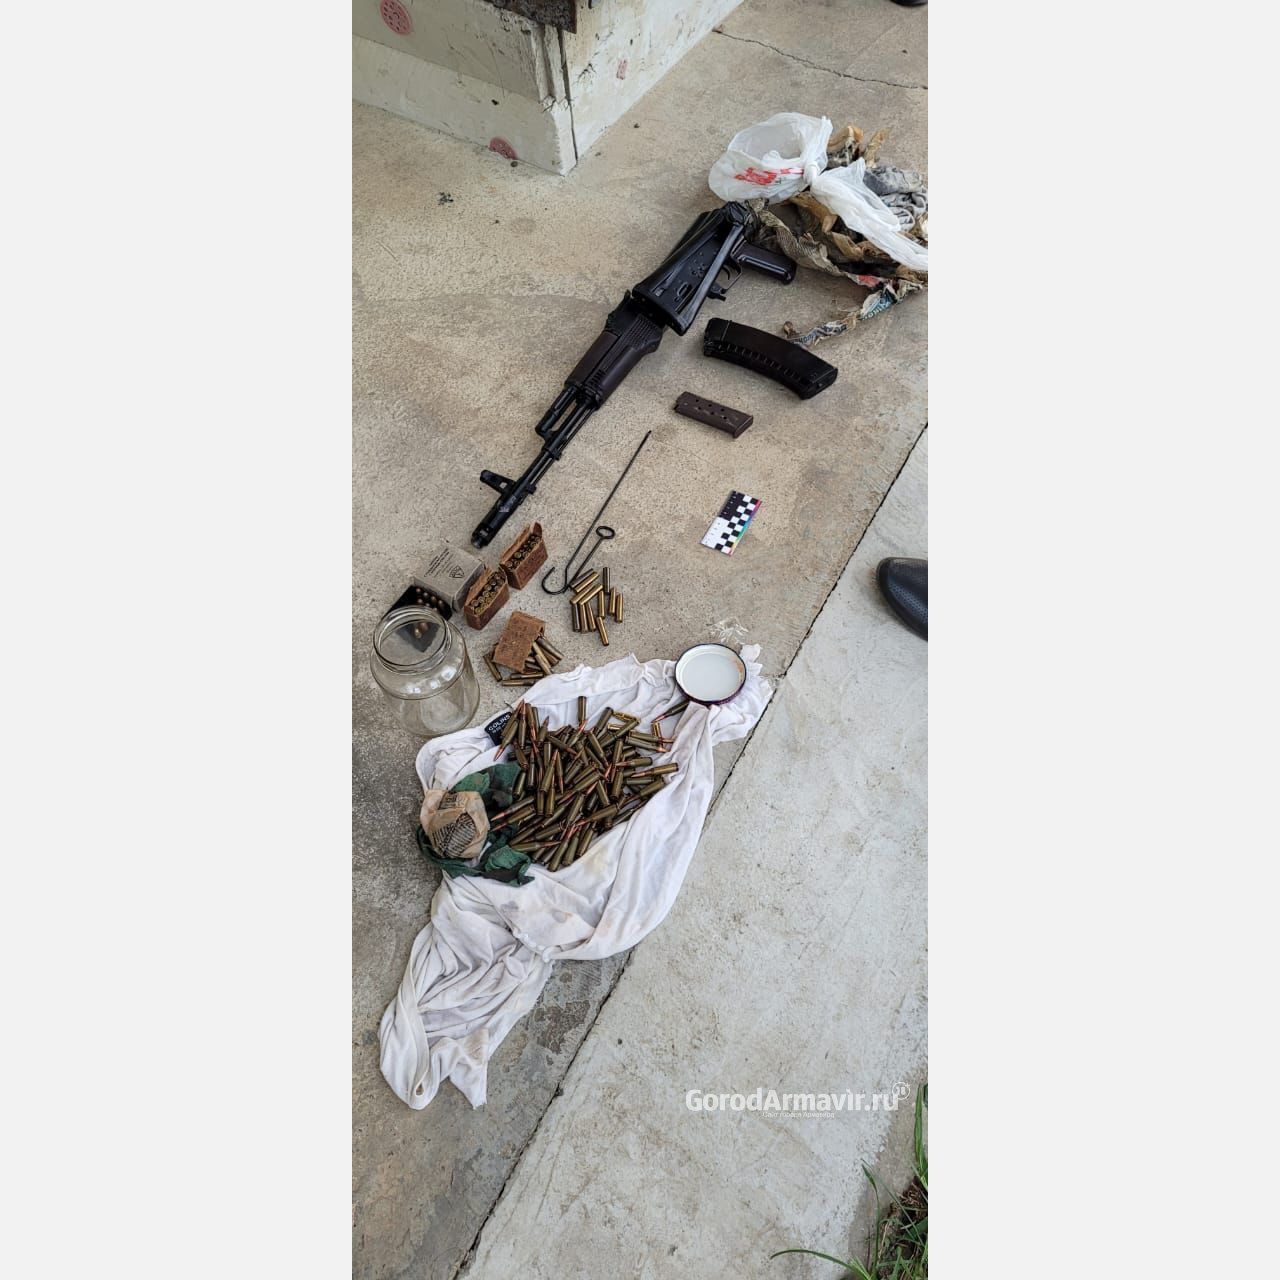 Полиция Армавира изъяла у местного жителя 32 тонны спиртосодержащей жидкости и оружие 